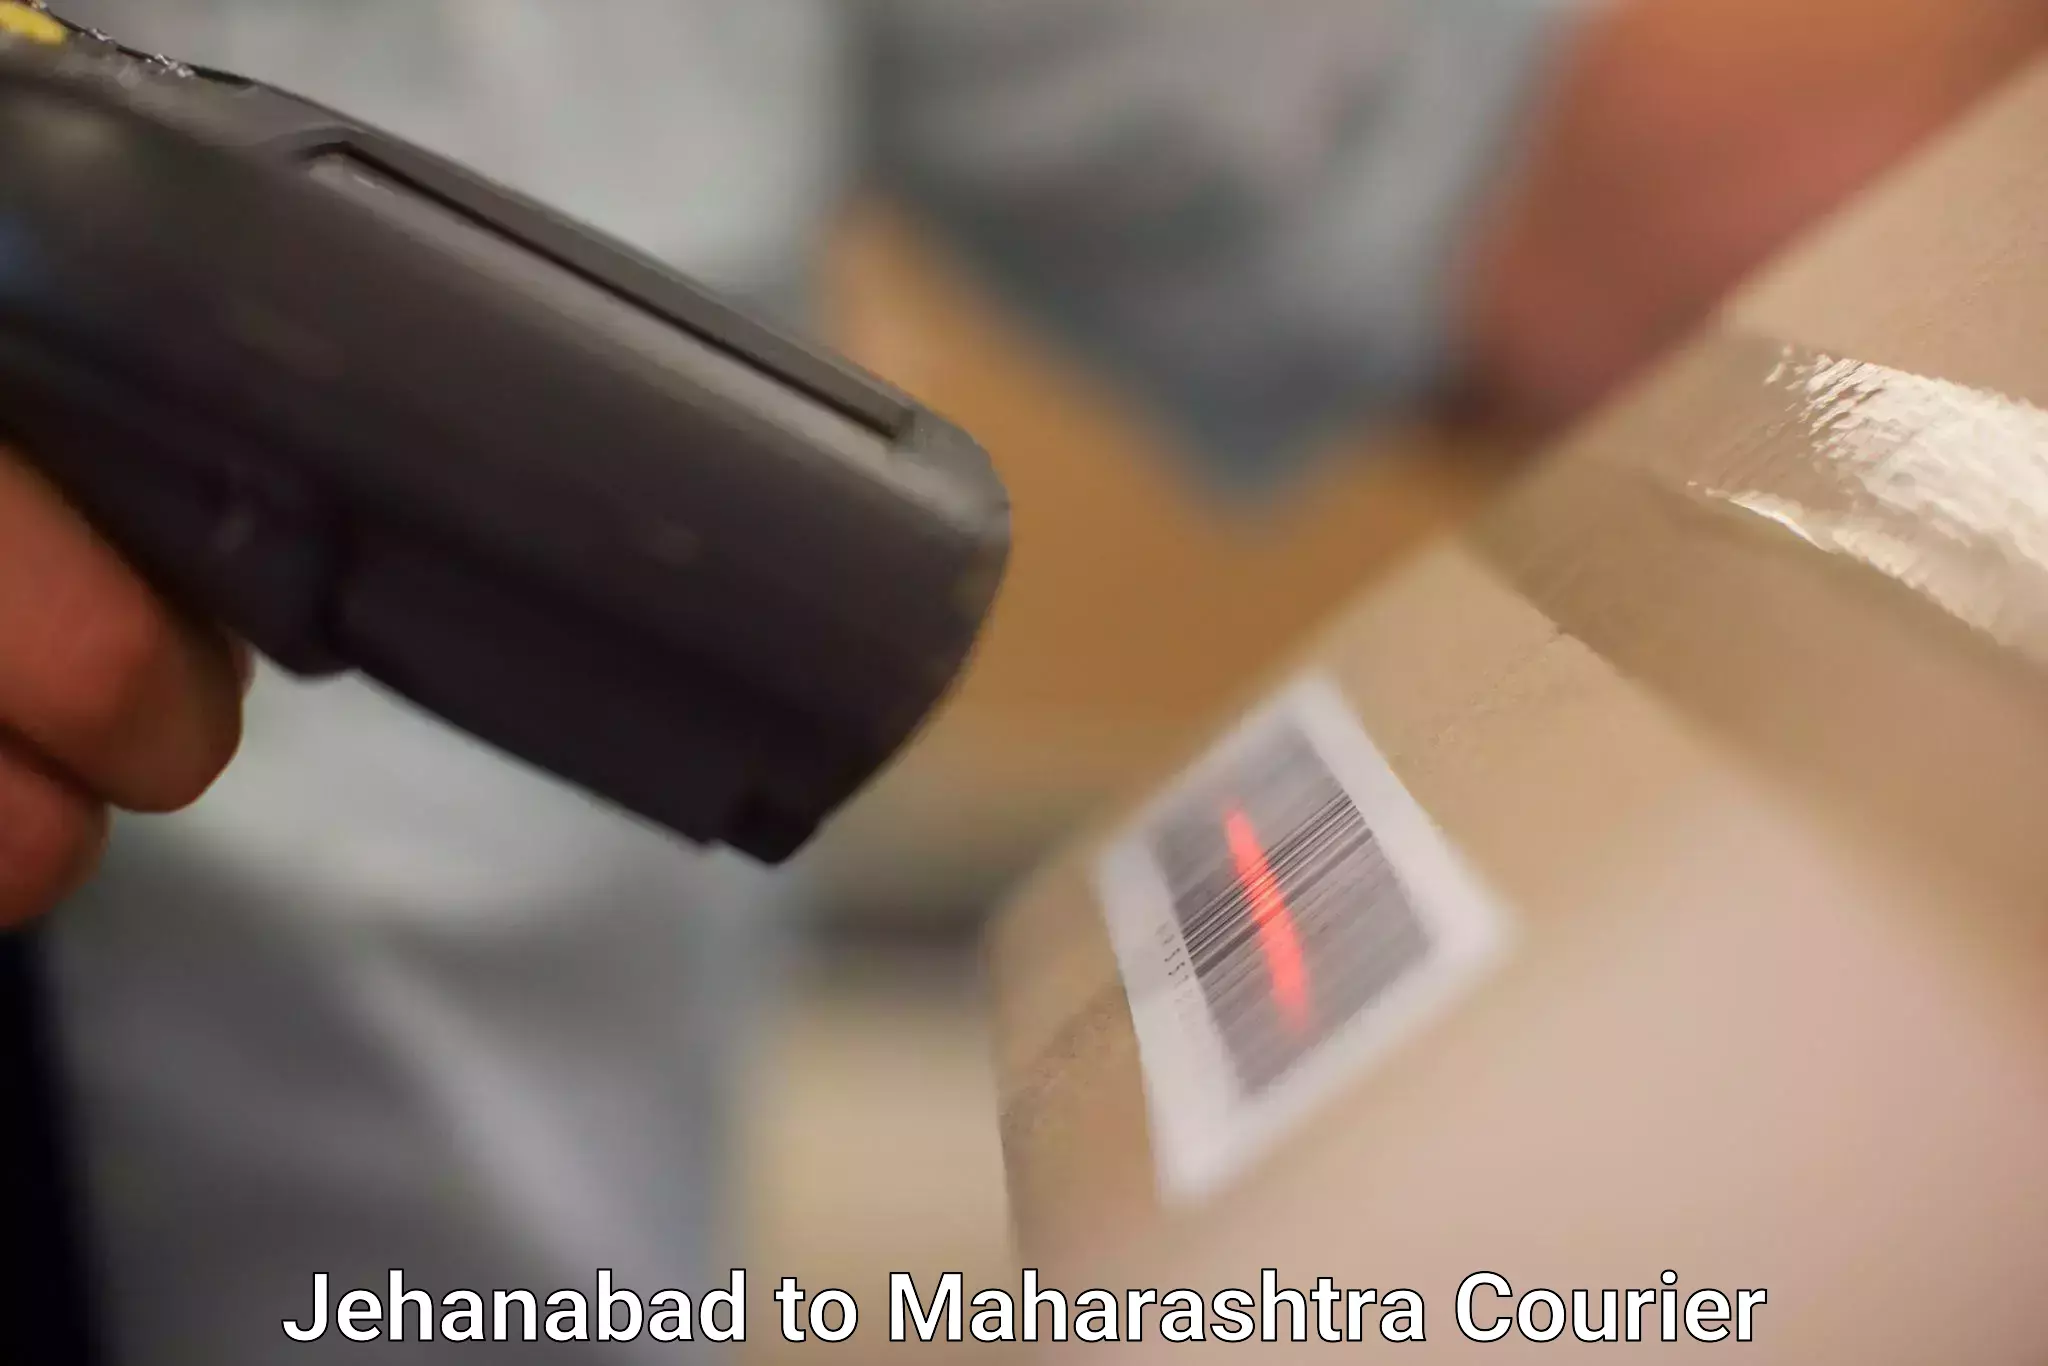 Tracking updates in Jehanabad to Maharashtra